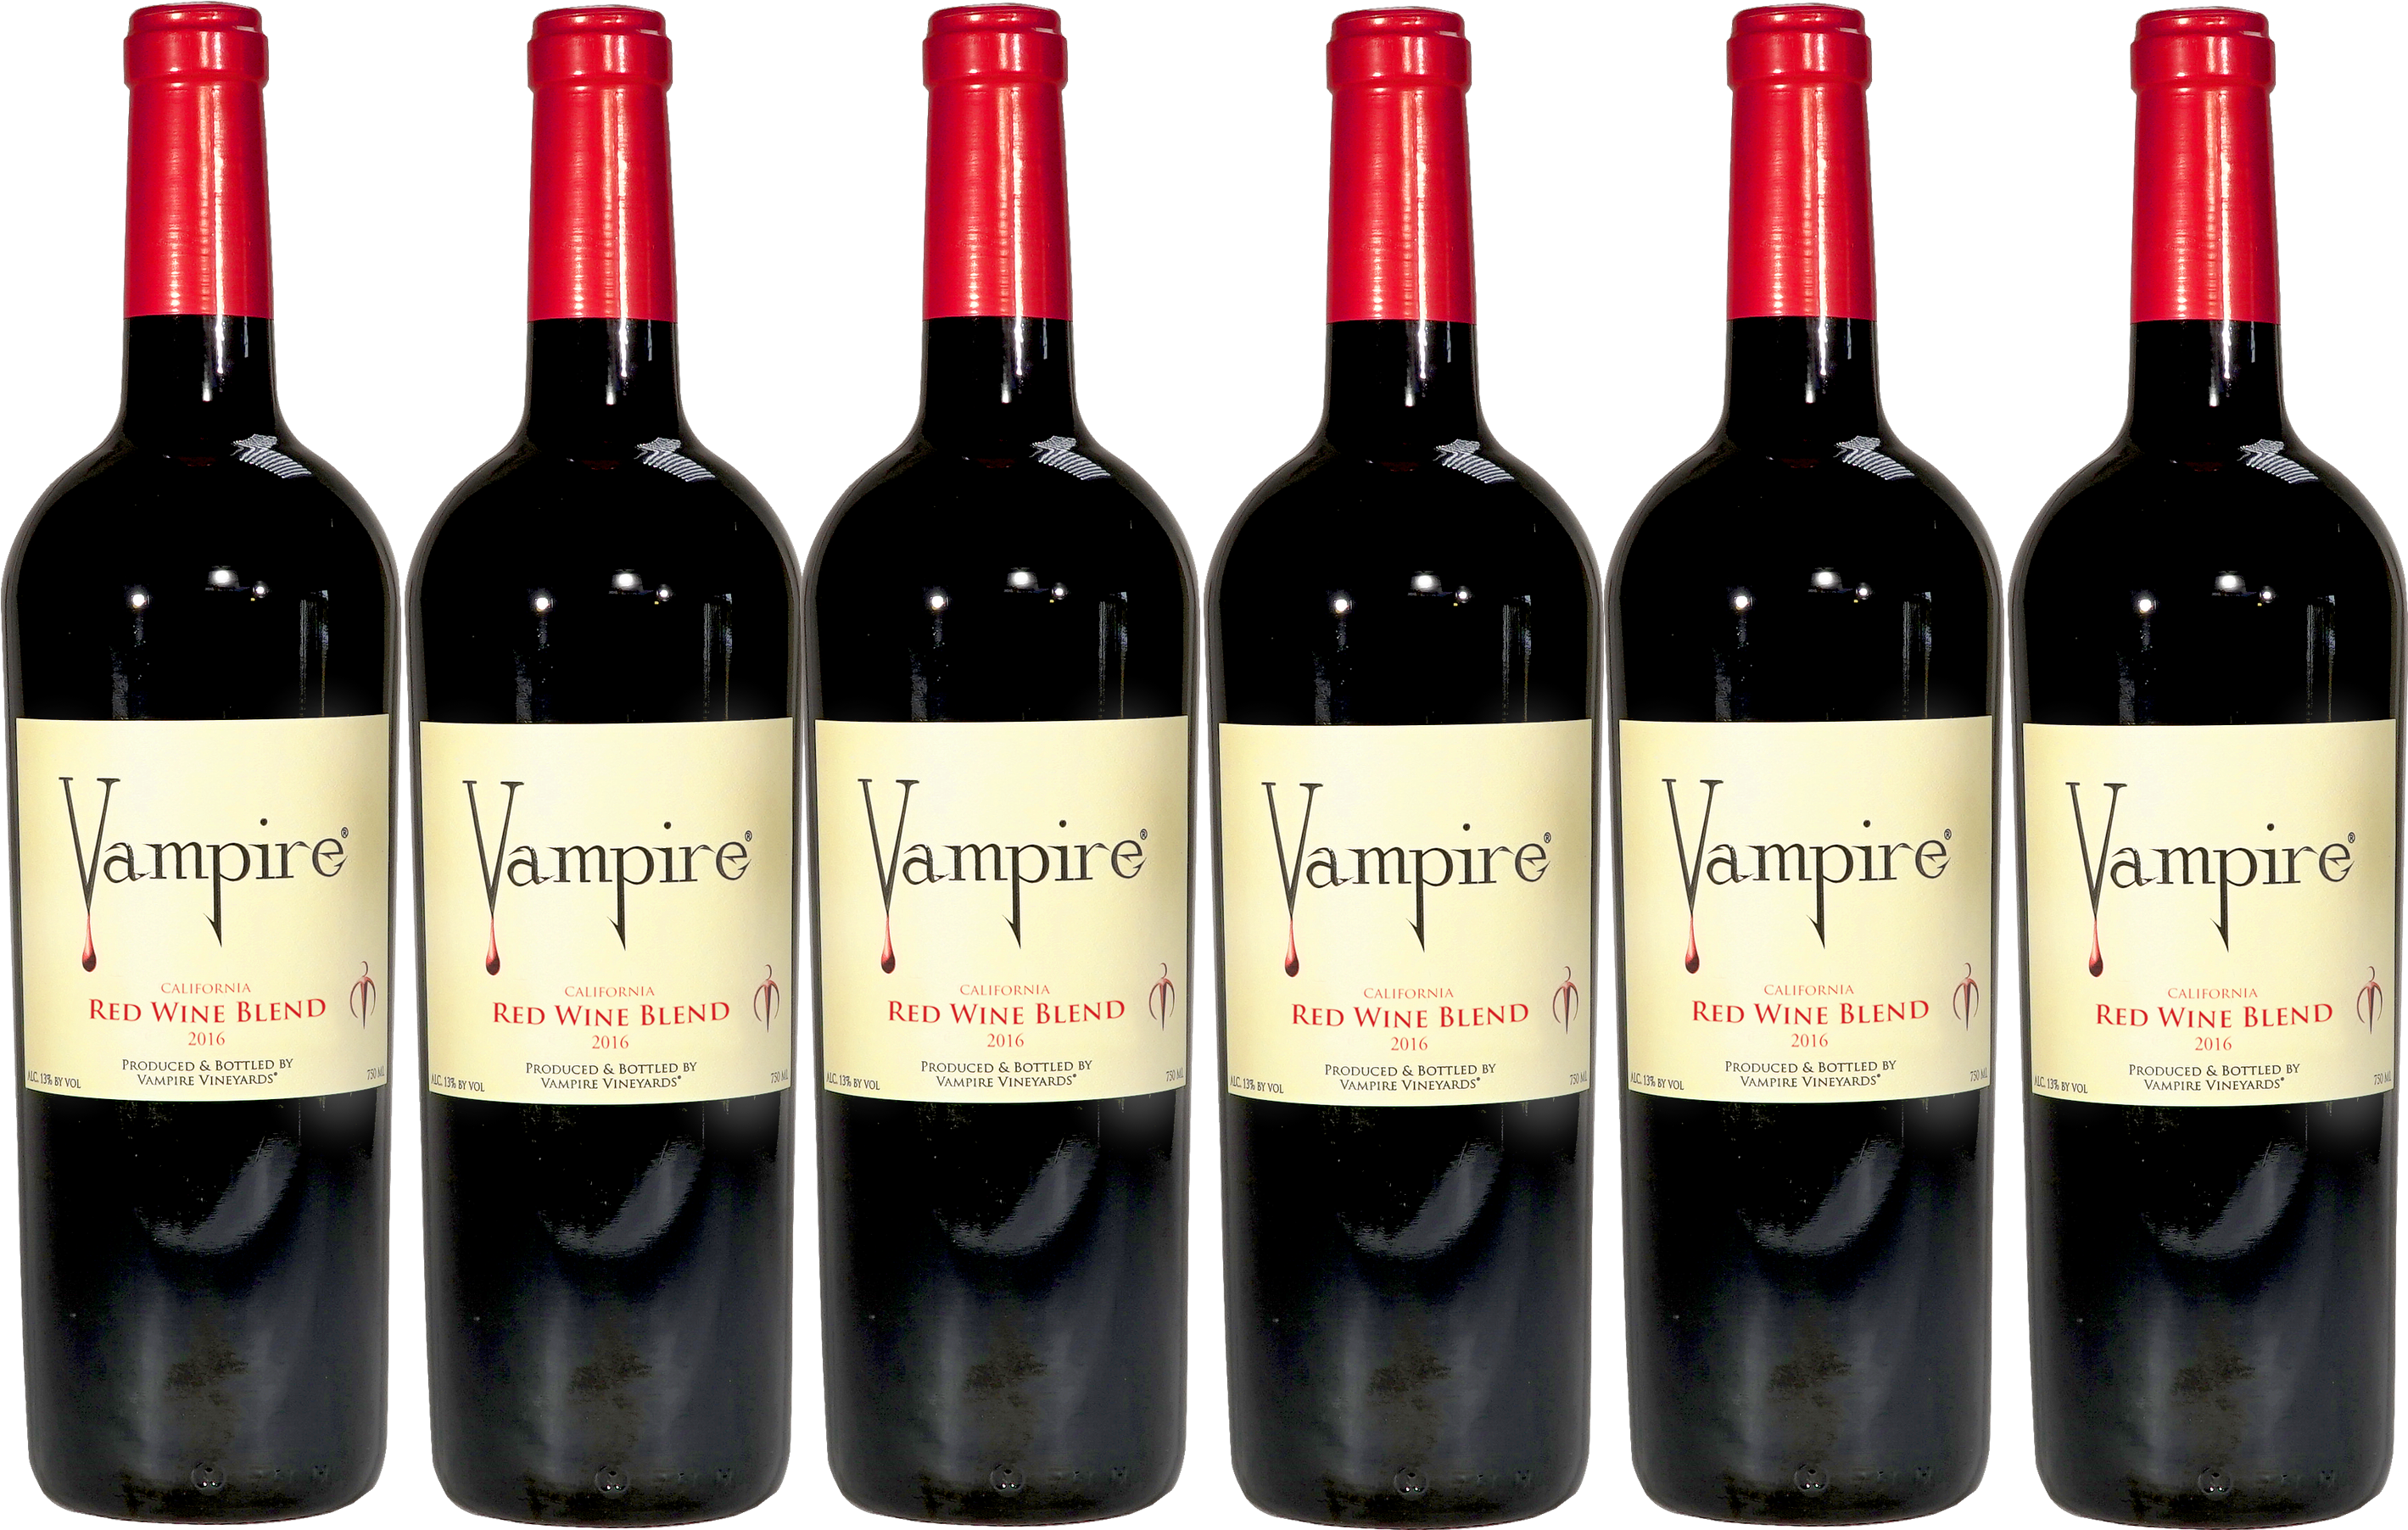 Vampire Red Wine Blend Bottles